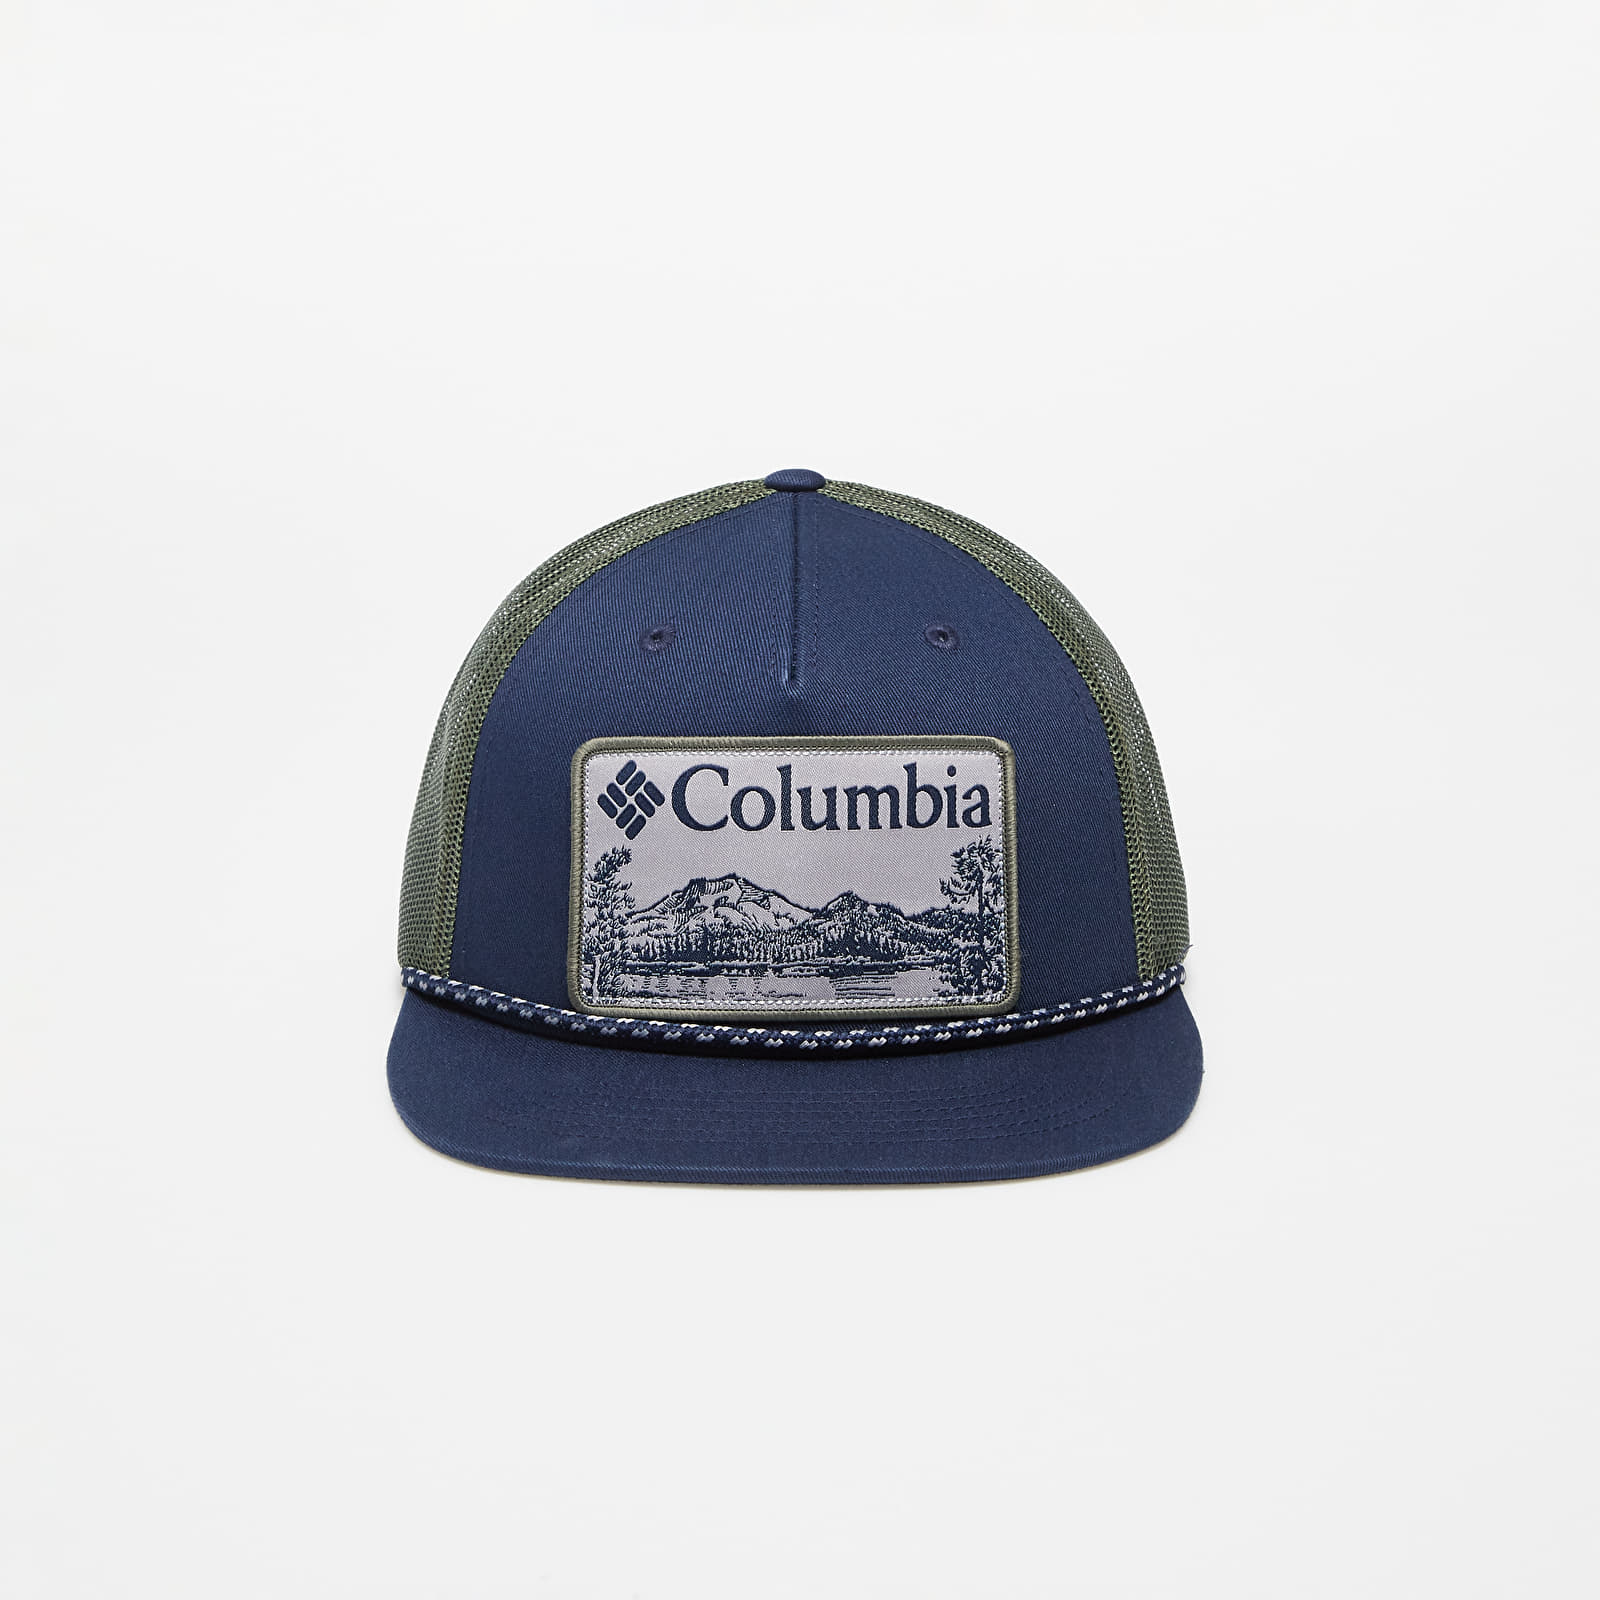 Columbia Flat Brim Snap, casquette urbaine homme